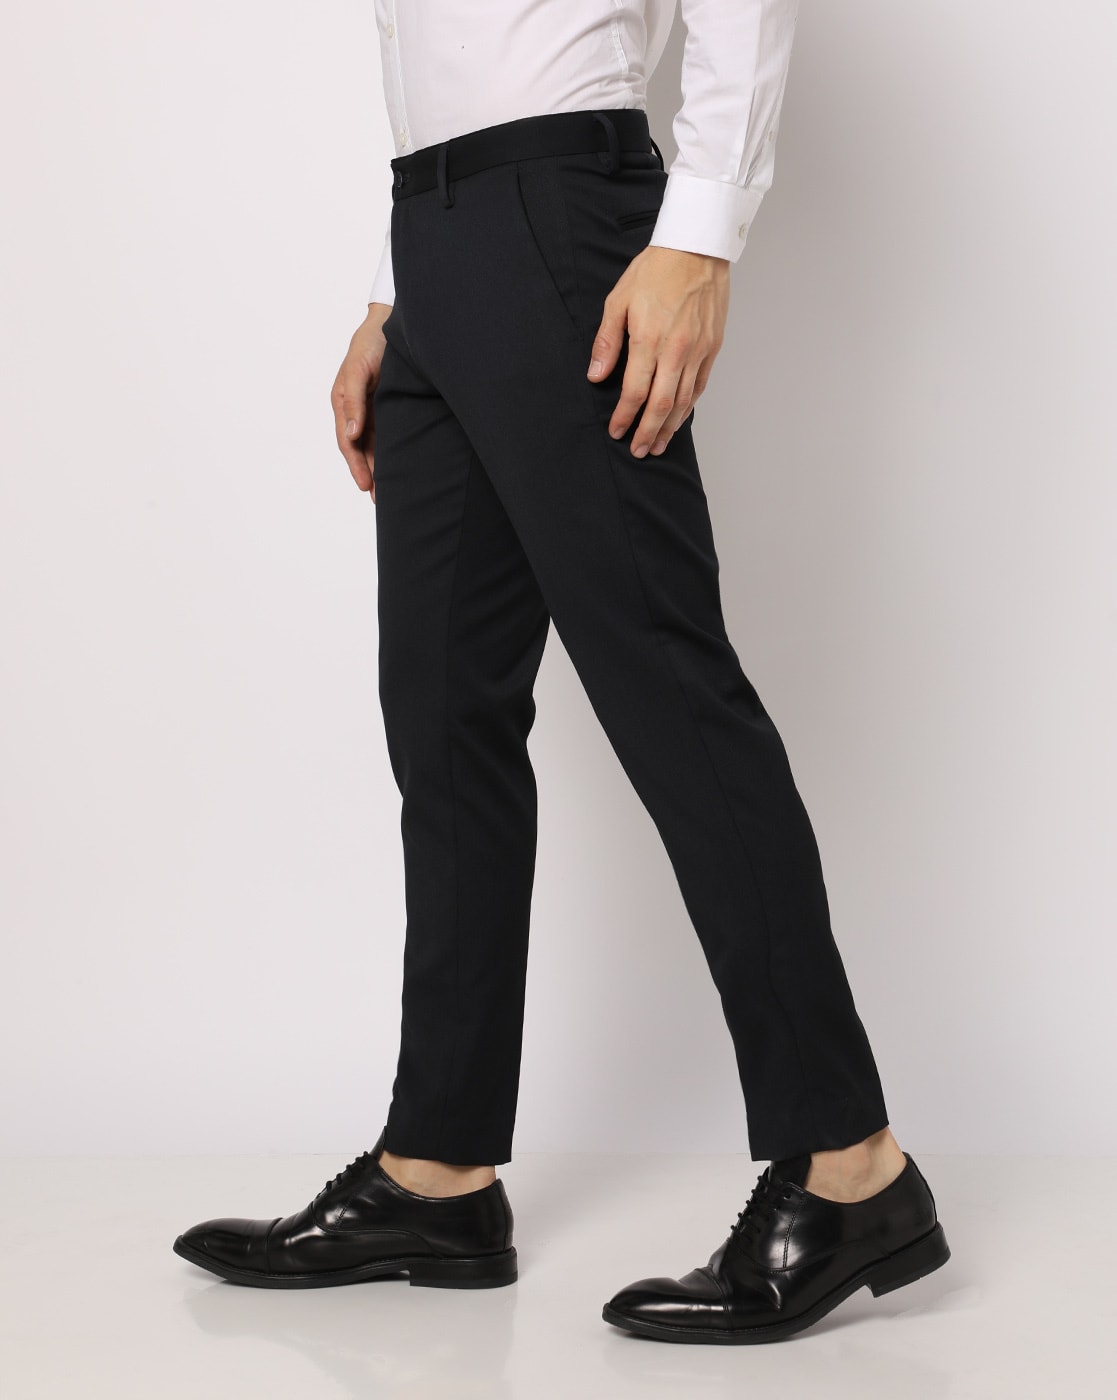 Lavender Plain Corporate Uniforms Shirt And Black Trousers Unstitched   Uniform Sarees